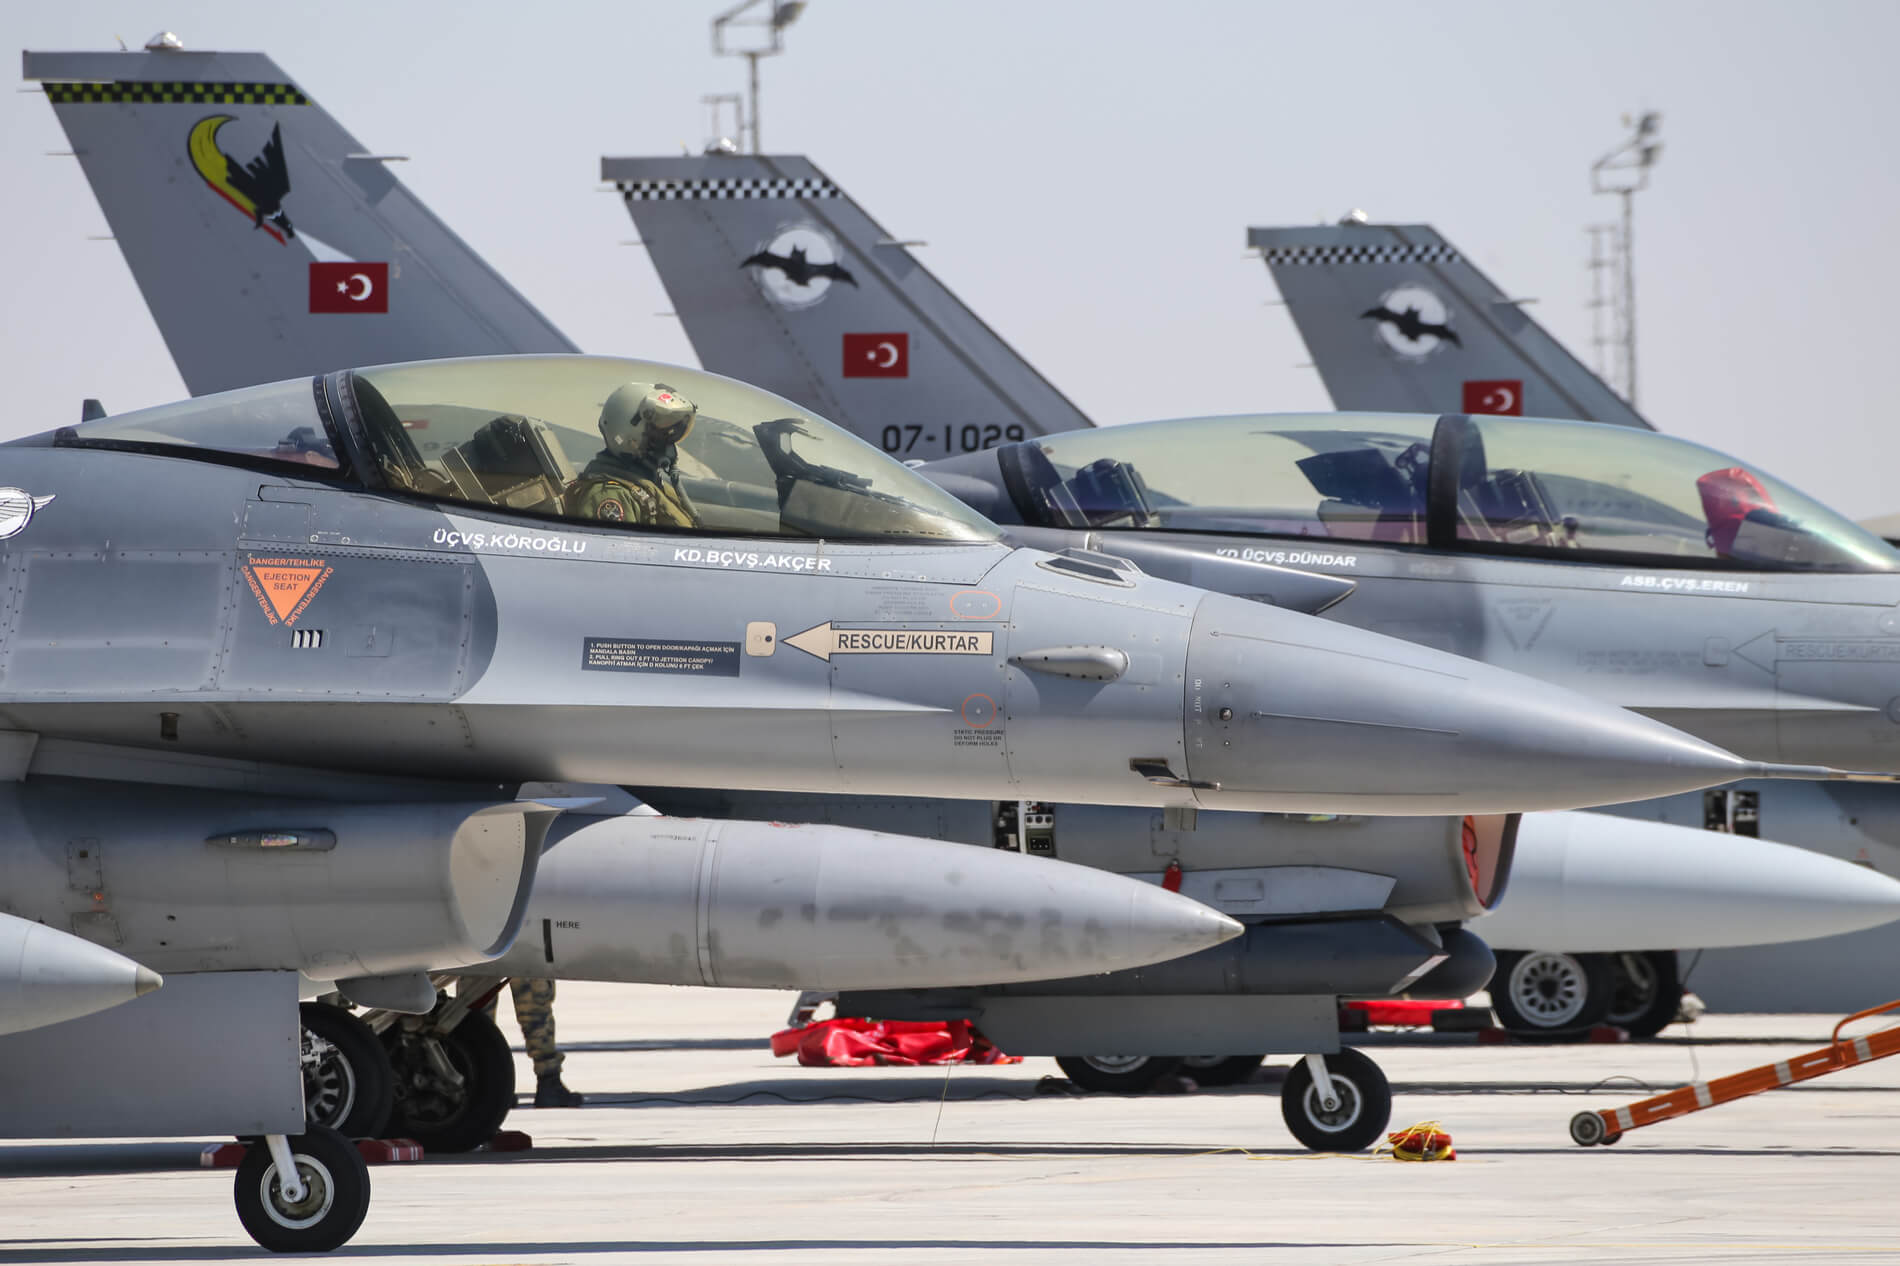 Αποκάλυψη από αμερικανικό περιοδικό! Γυμνή στον αέρα η Τουρκία – Δεν υπάρχουν πιλότοι να πετάξουν τα F-16